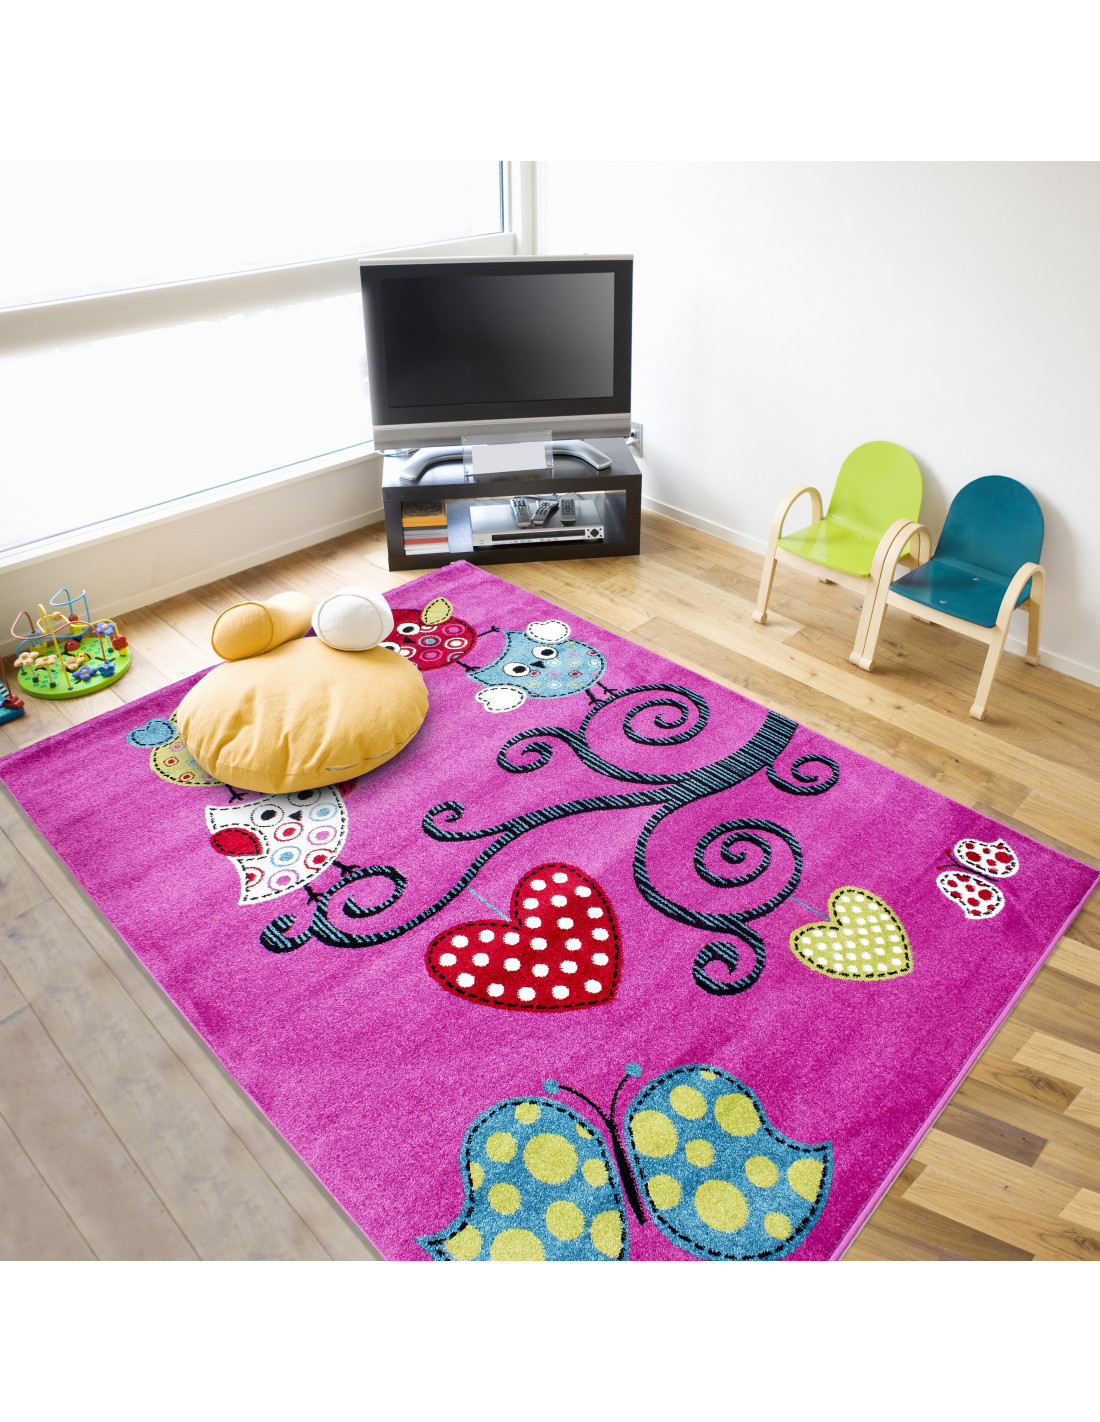 Alfombra infantil, alfombra para habitación infantil con motivos árbol mariposa niños 0420 violeta